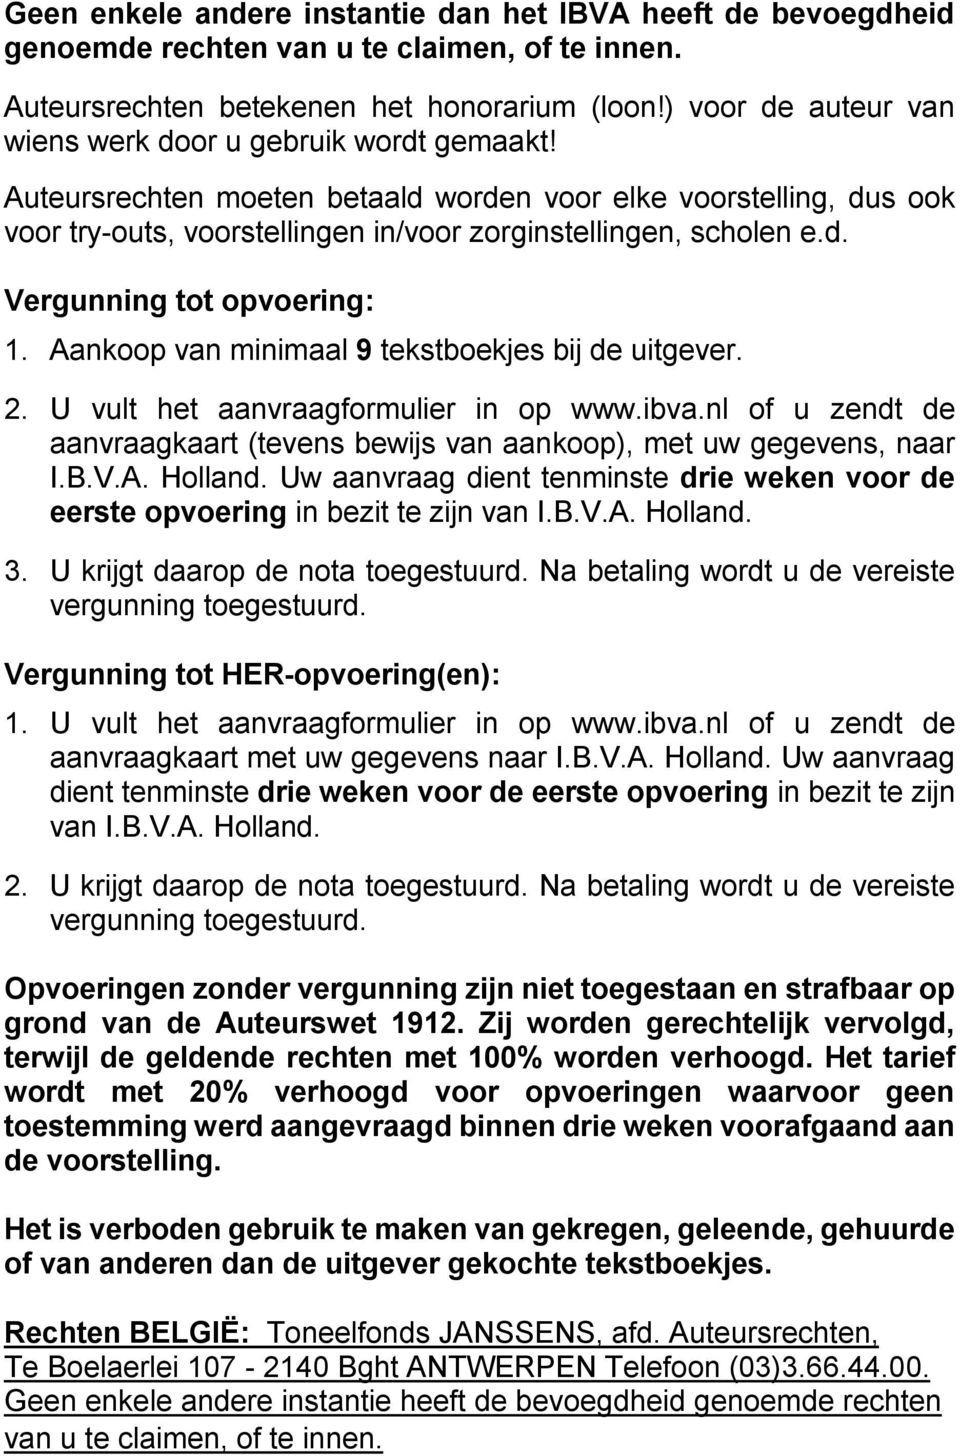 Aankoop van minimaal 9 tekstboekjes bij de uitgever. 2. U vult het aanvraagformulier in op www.ibva.nl of u zendt de aanvraagkaart (tevens bewijs van aankoop), met uw gegevens, naar I.B.V.A. Holland.